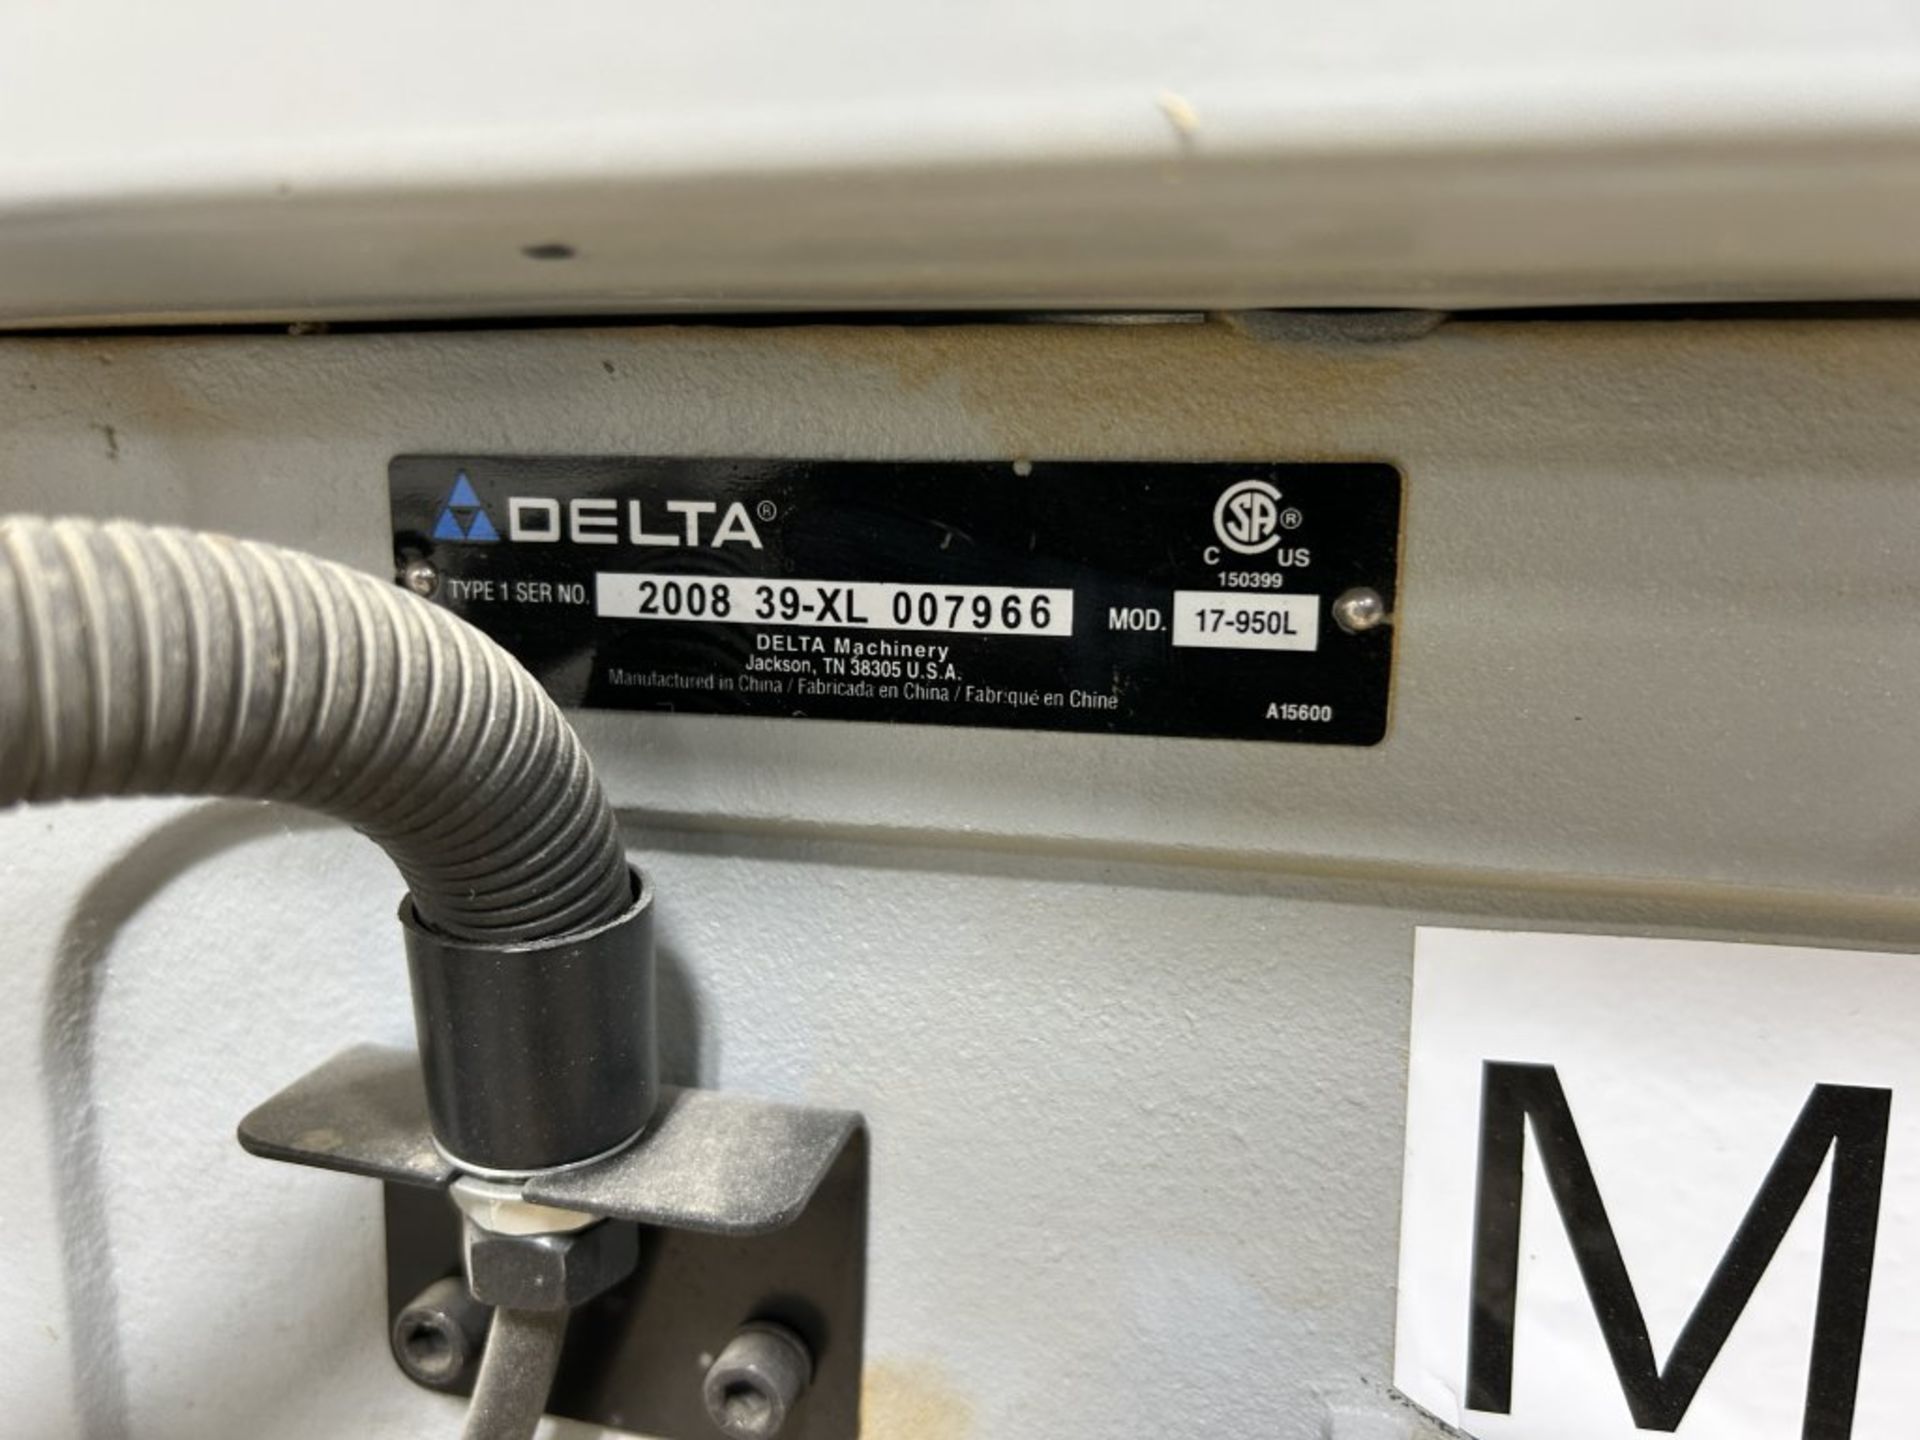 DELTA 17-950L PEDESTAL DRILL PRESS, 220V, S/N: 200839-XL007966 - Image 10 of 10